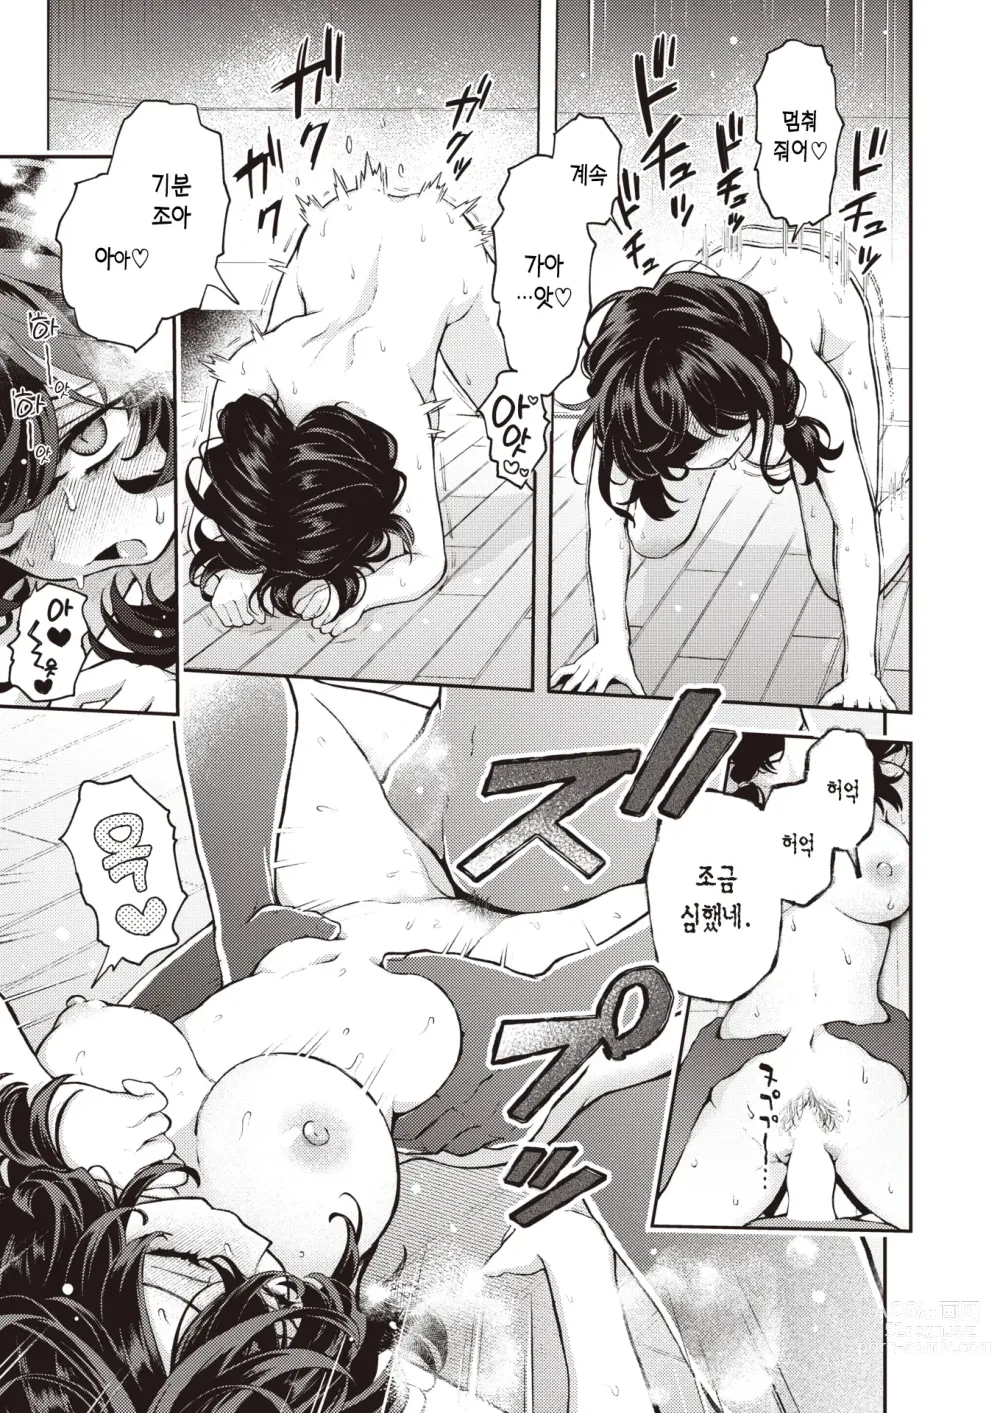 Page 20 of manga 혼자서 하지 마